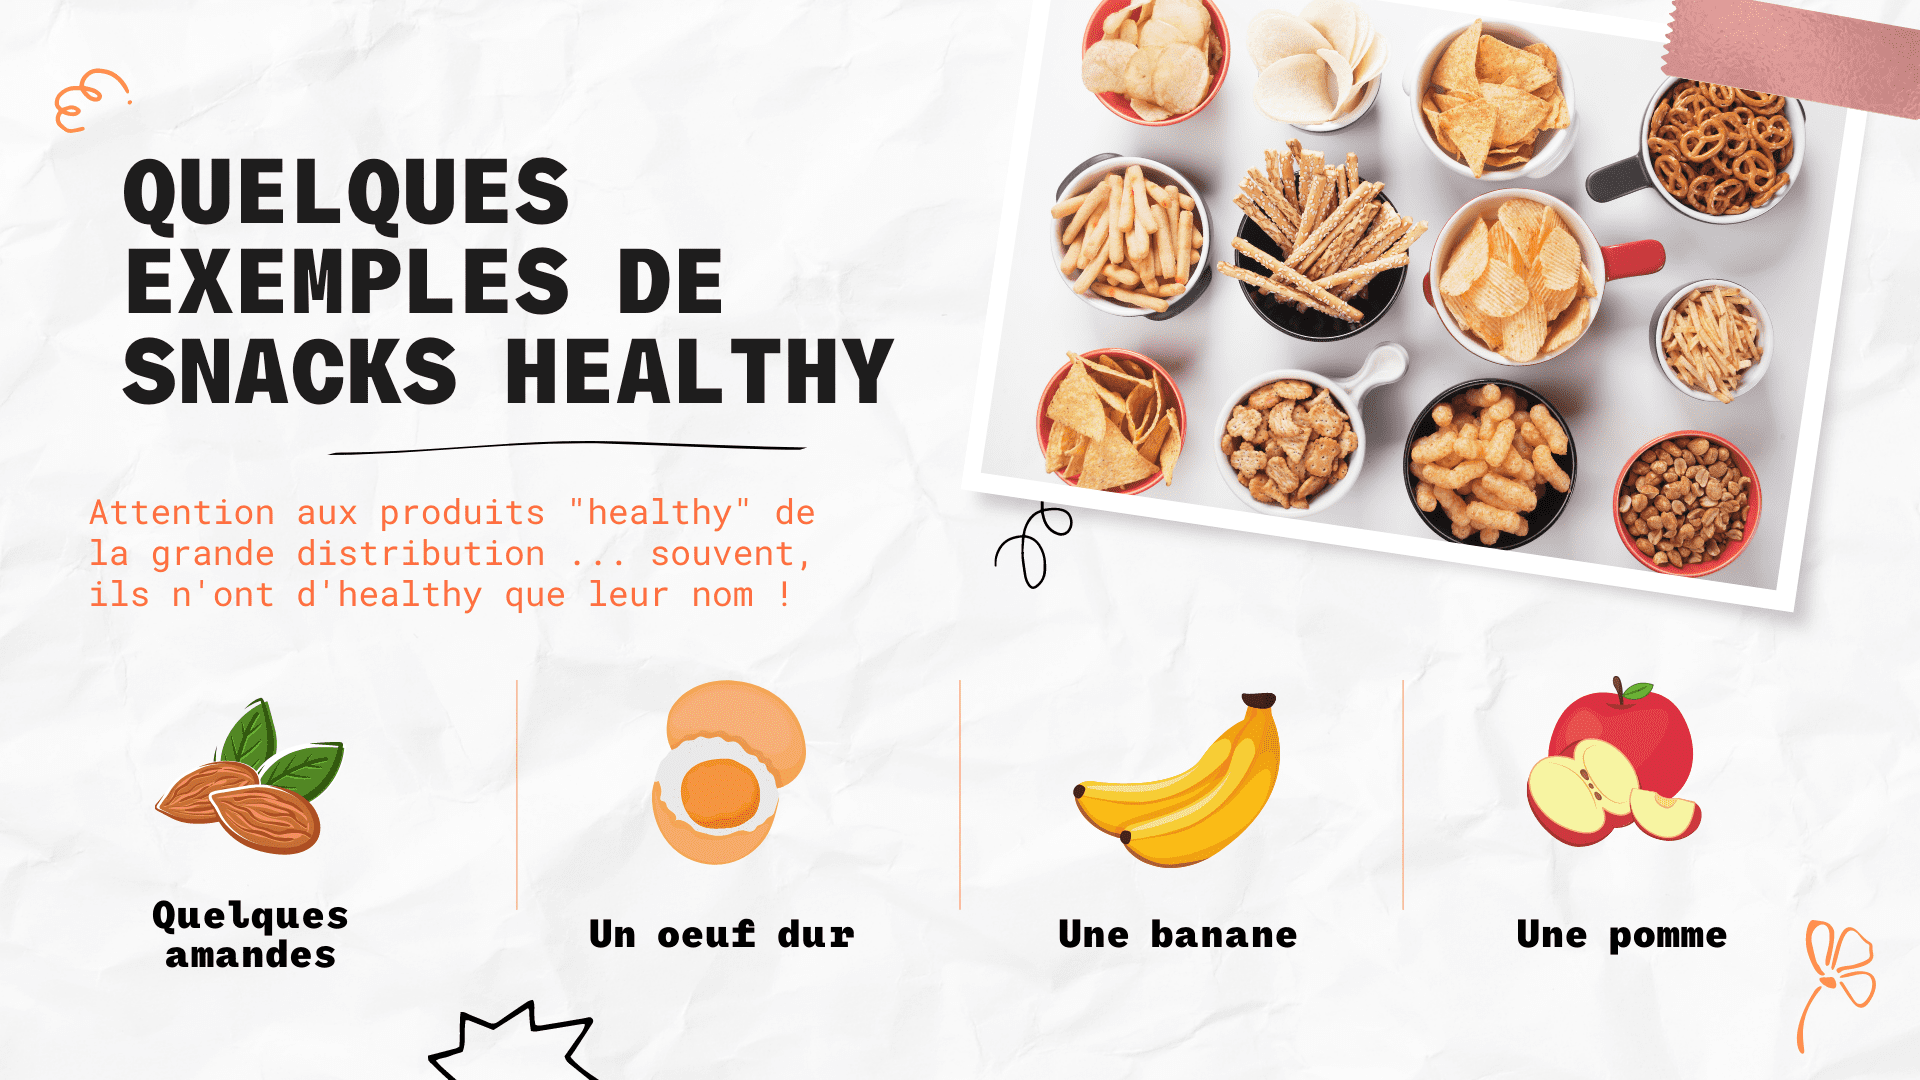 Quelques exemples de snacks healthy non-sucrés